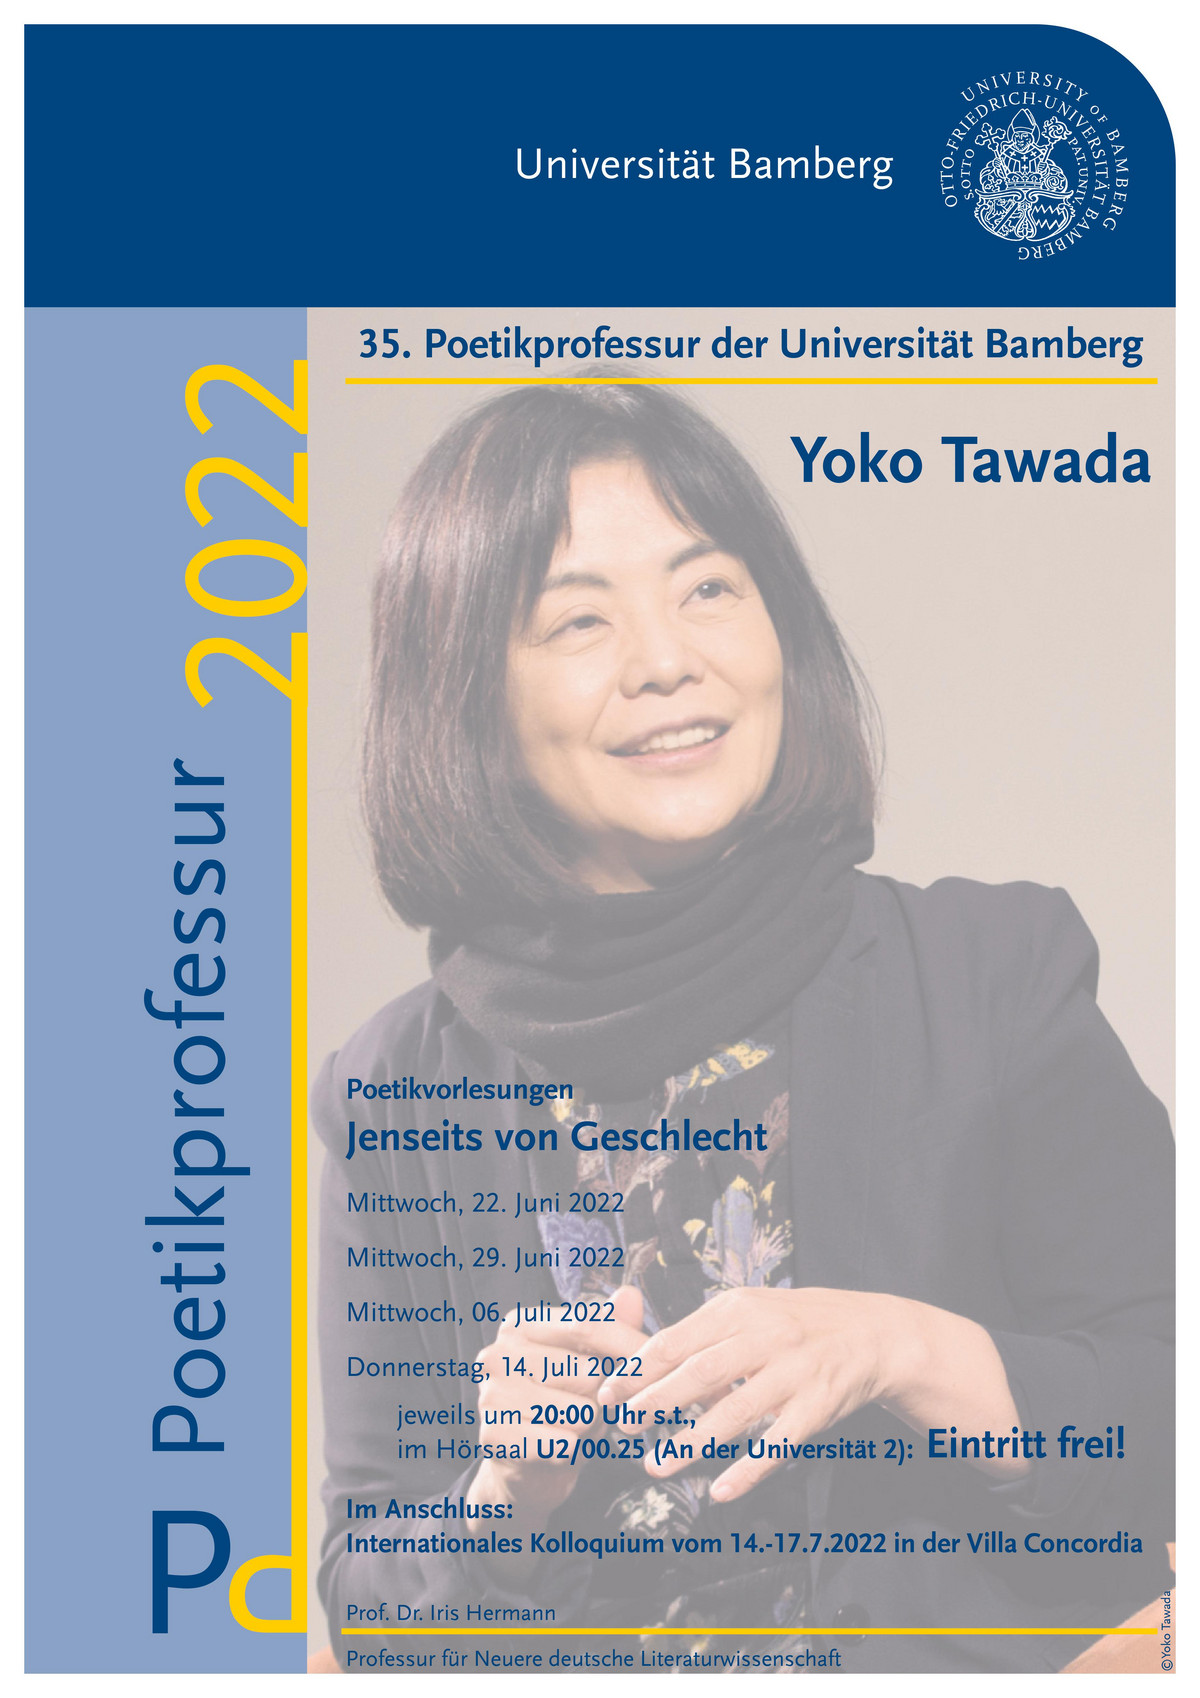 Symposium „jenseits Von Geschlecht“ Im Werk Yoko Tawadas Professur